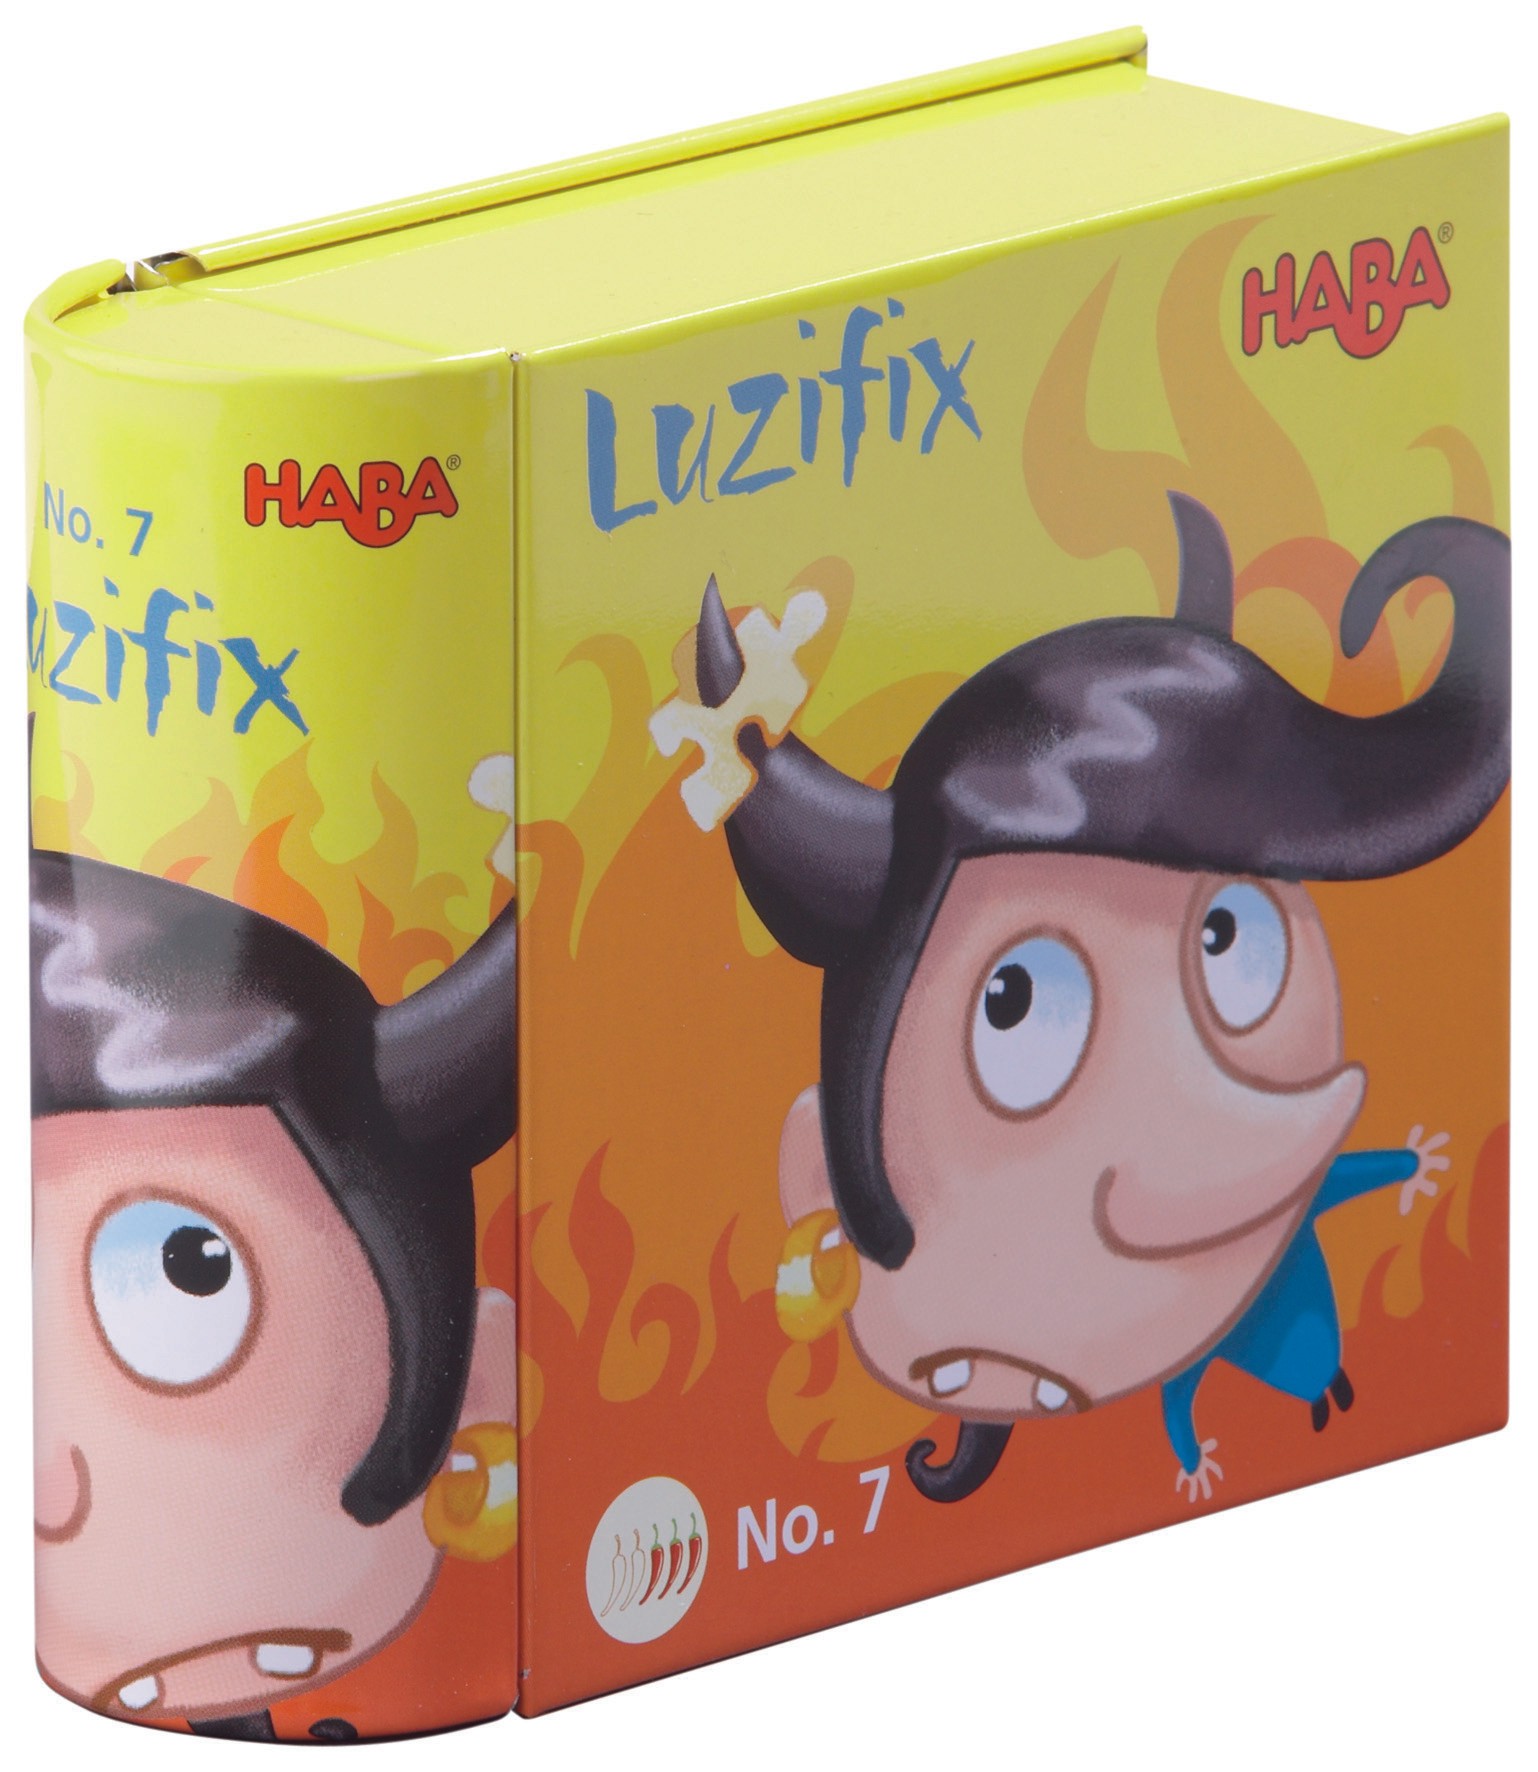 Luzifix - Teufelspuzzle von Haba